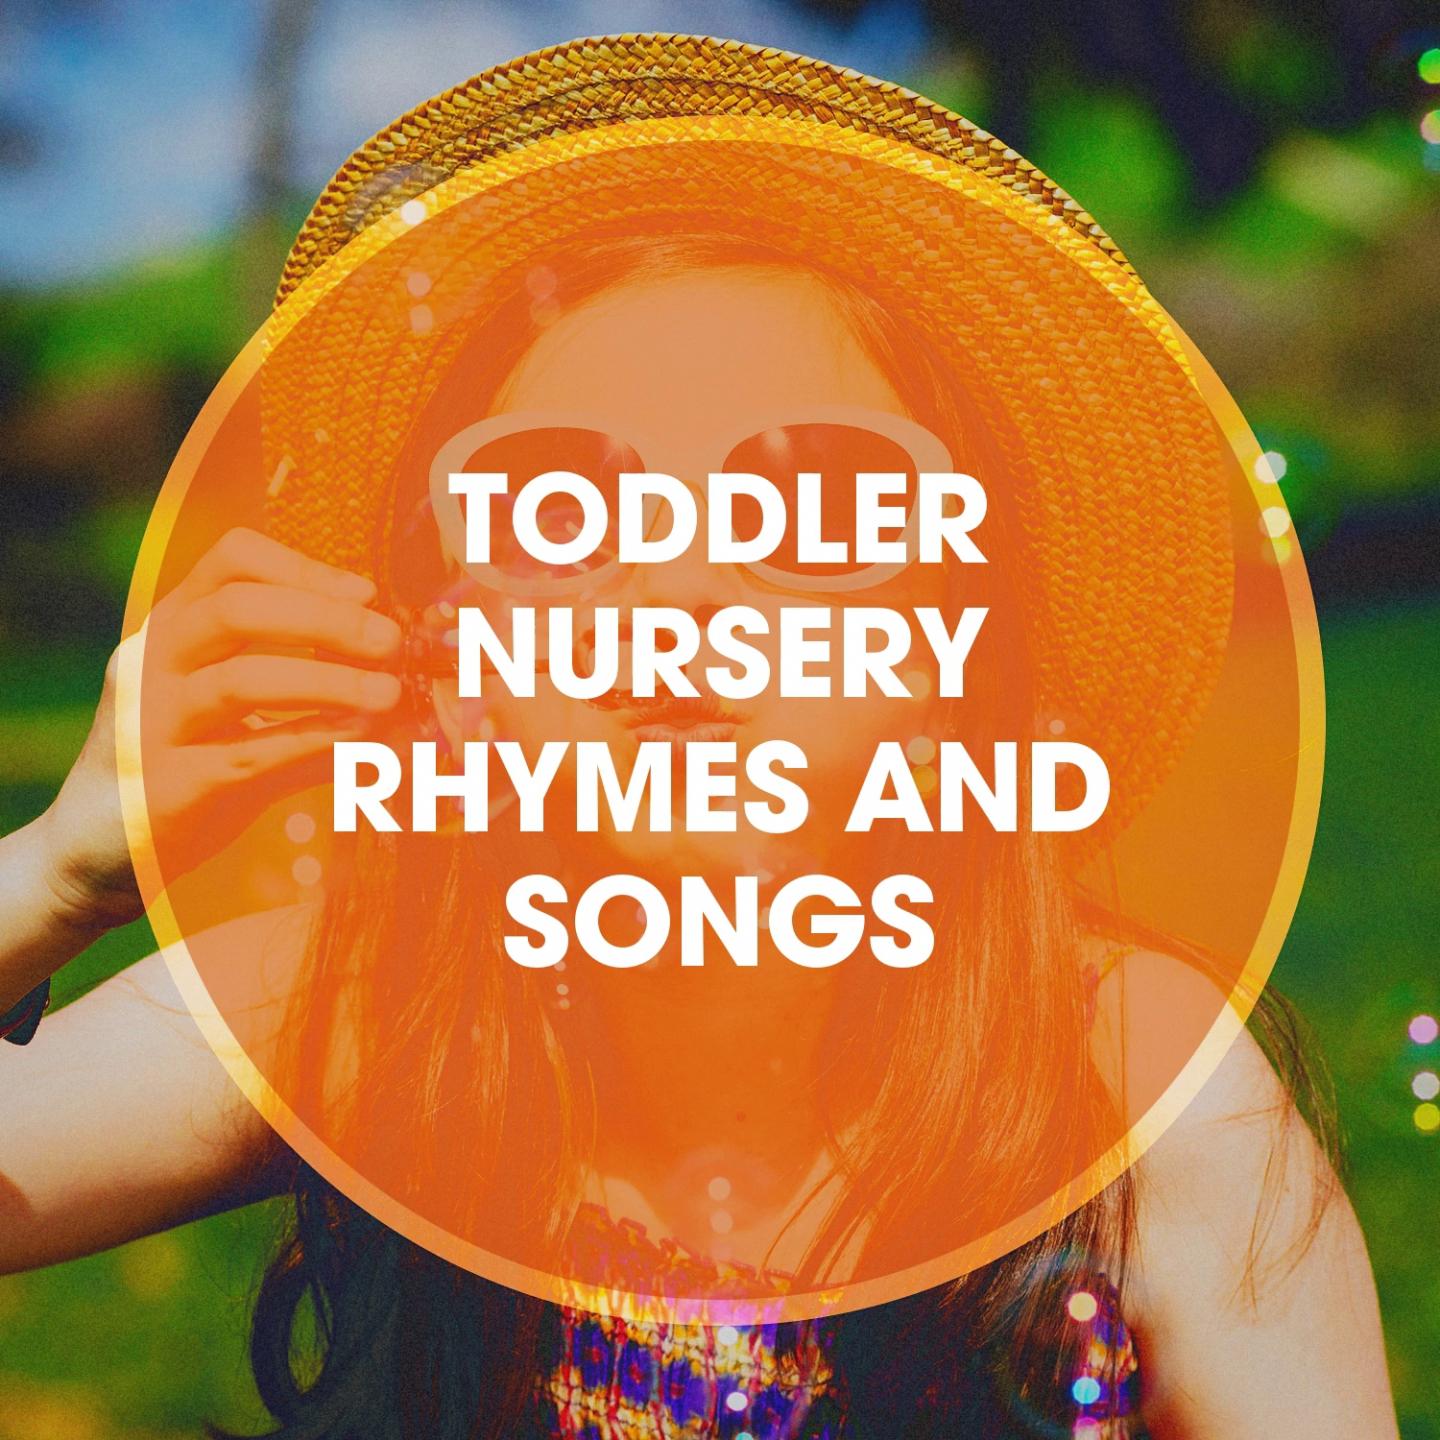 Toddler Nursery Rhymes and Songs